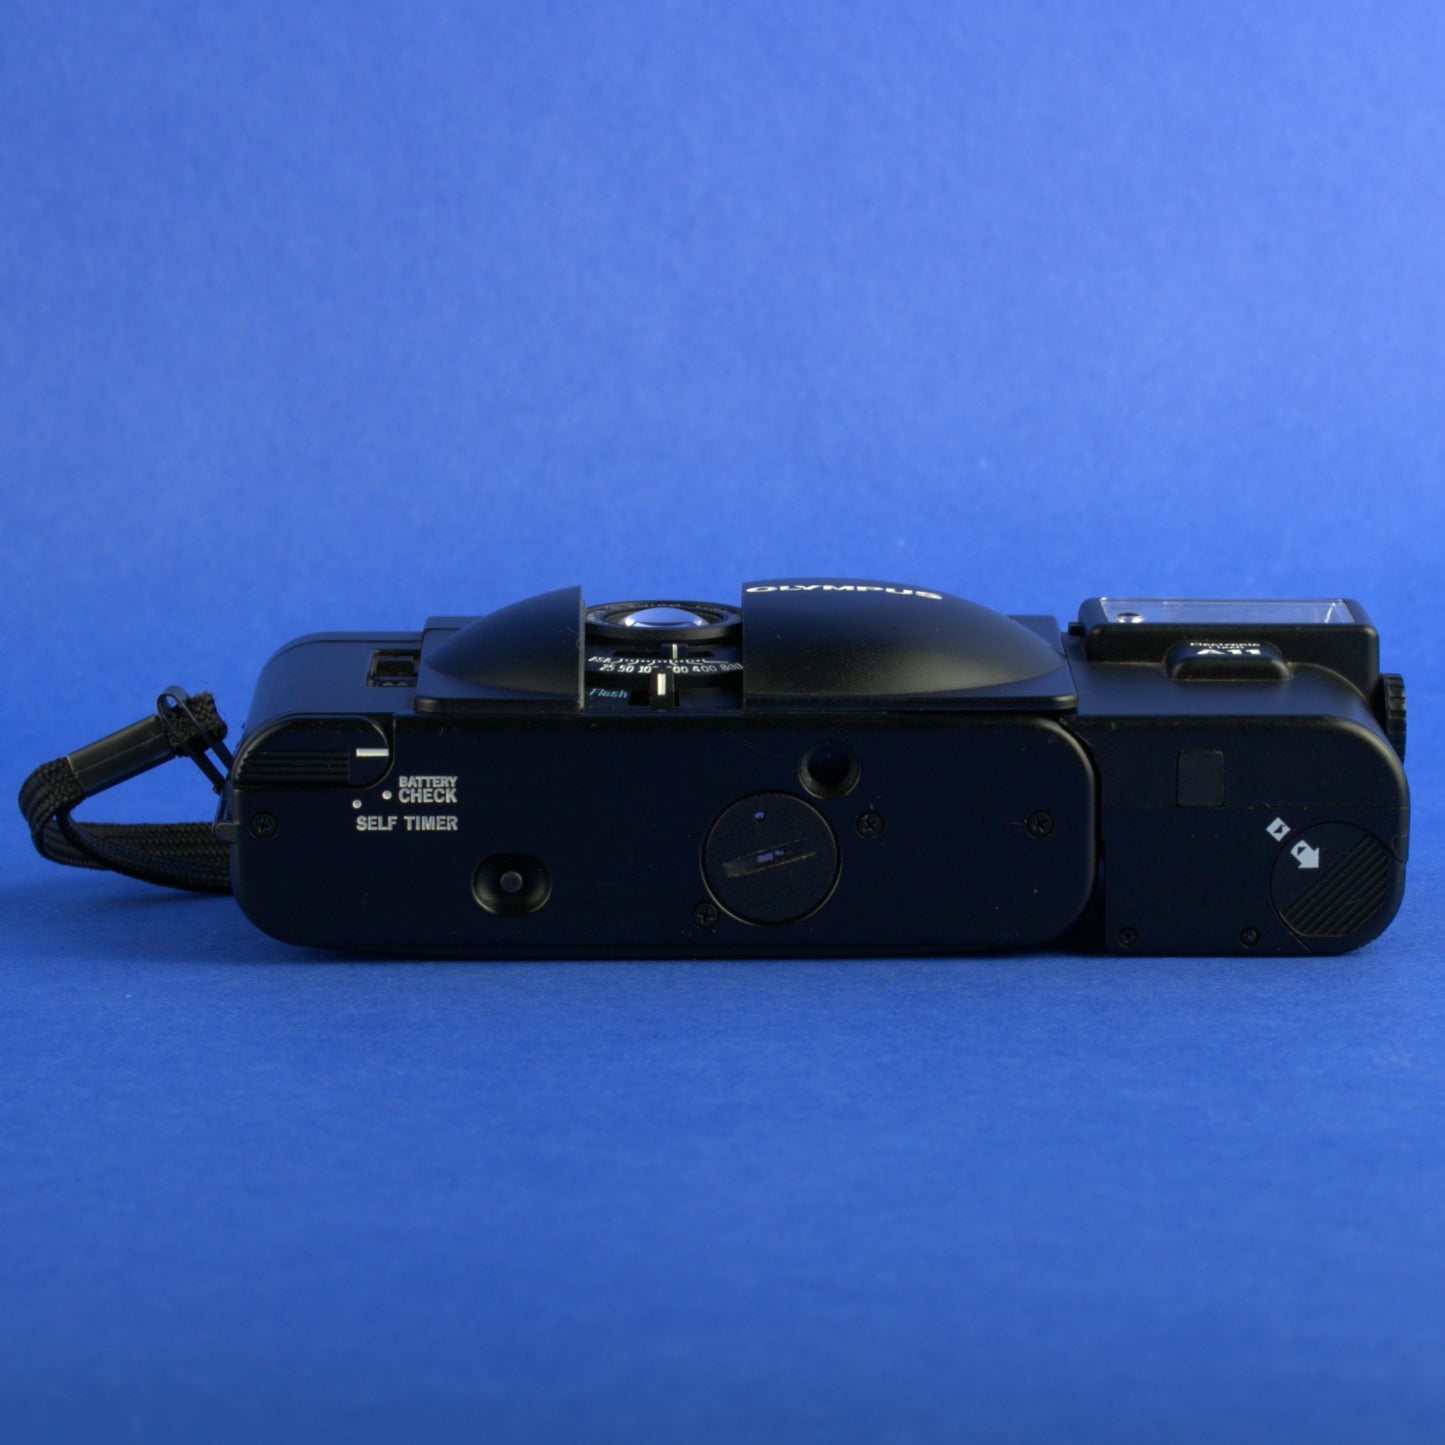 Olympus XA2 Film Camera with A11 Flash